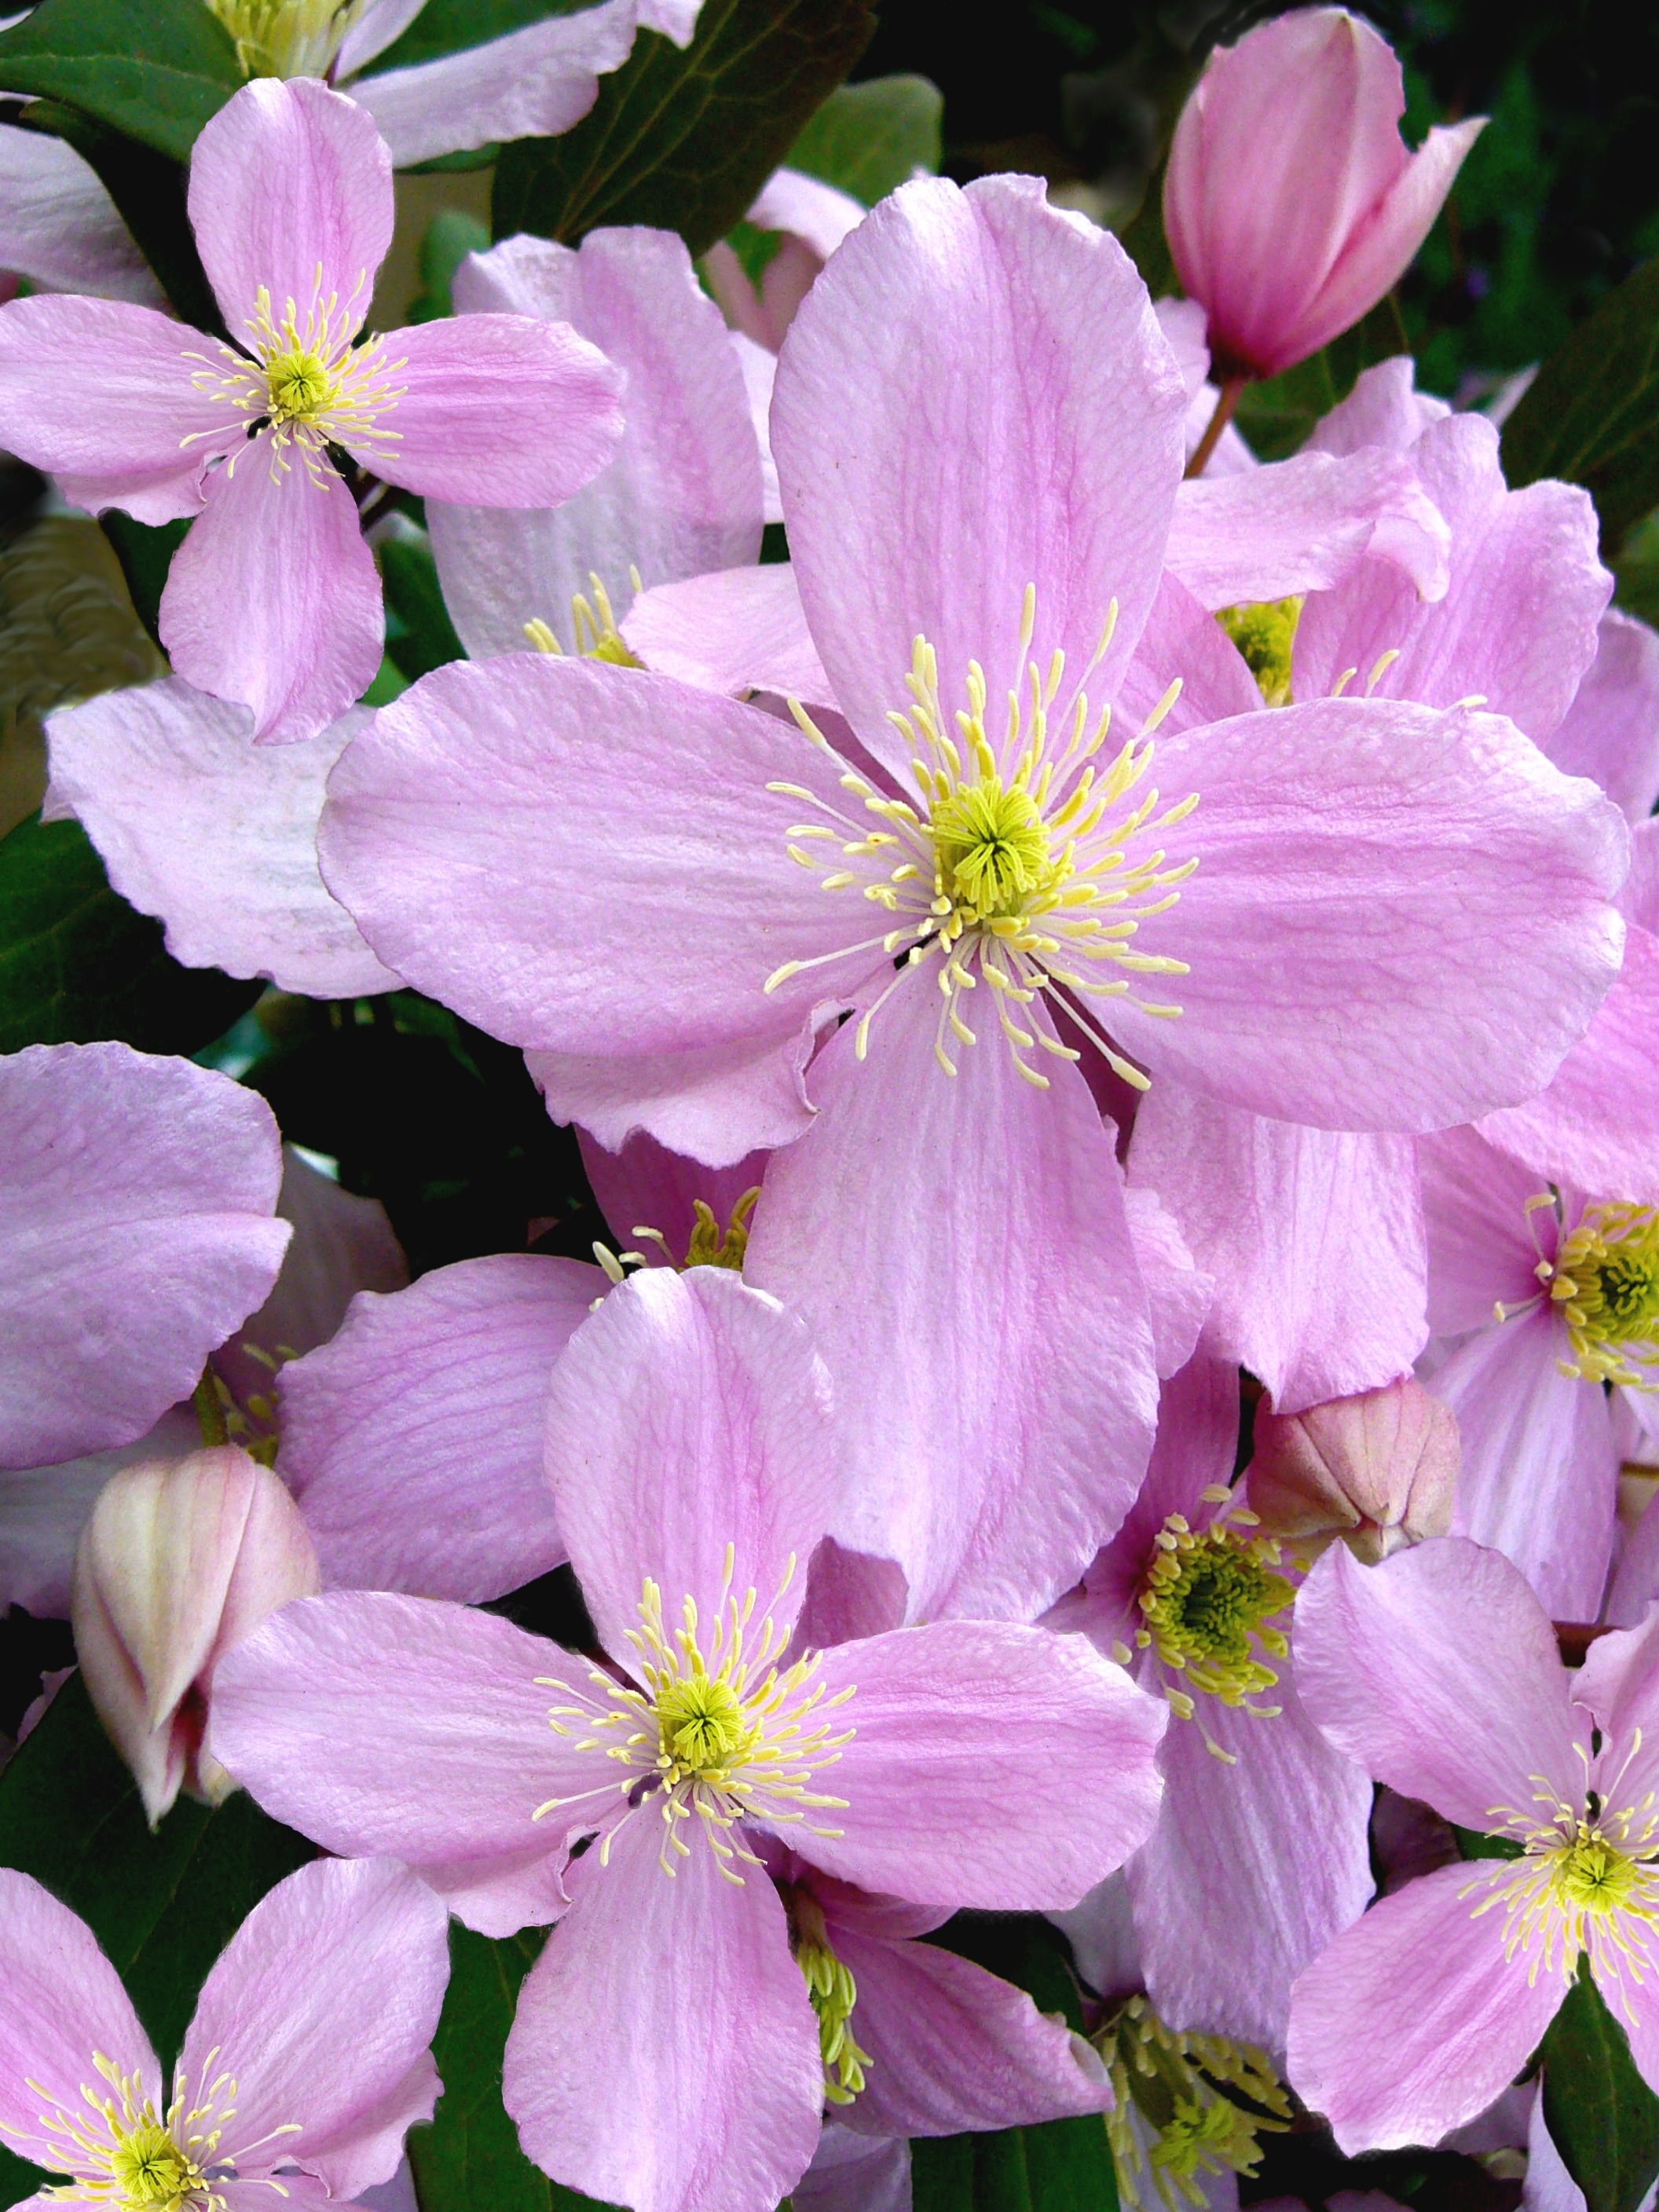 pink 4 petaled flowers